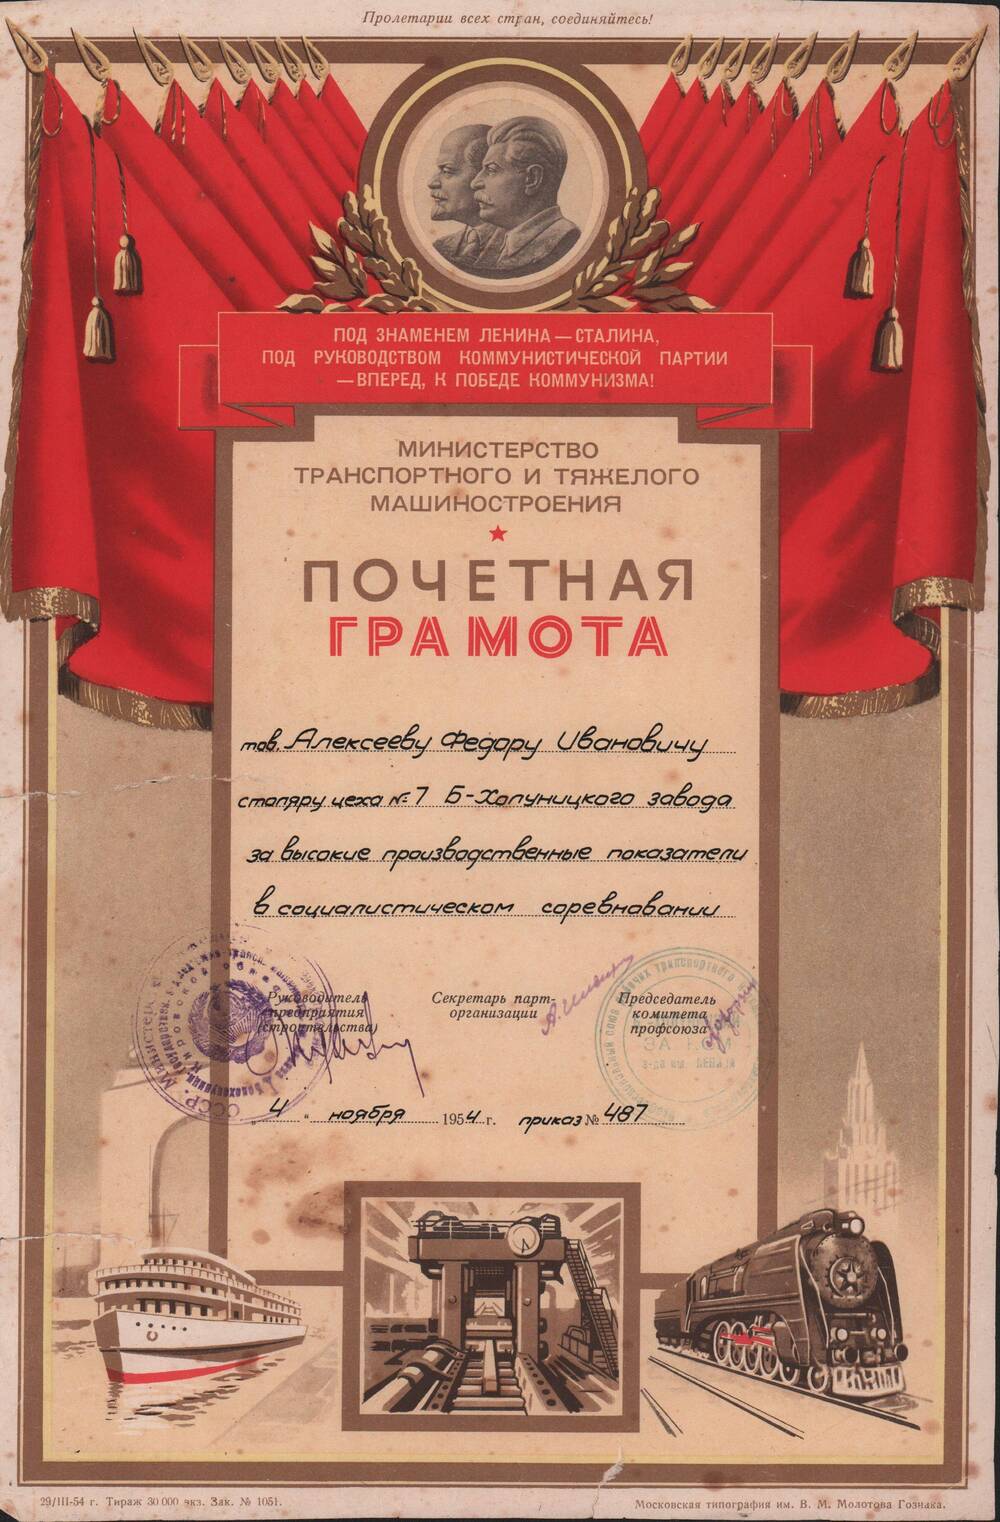 Почётная грамота Министерства Транспортного и Тяжёлого машиностроения за достигнутые высокие производственные показатели в социалистическом соревновании Алексеева Фёдора Ивановича. Приказ № 487 от 4 ноября 1954г.